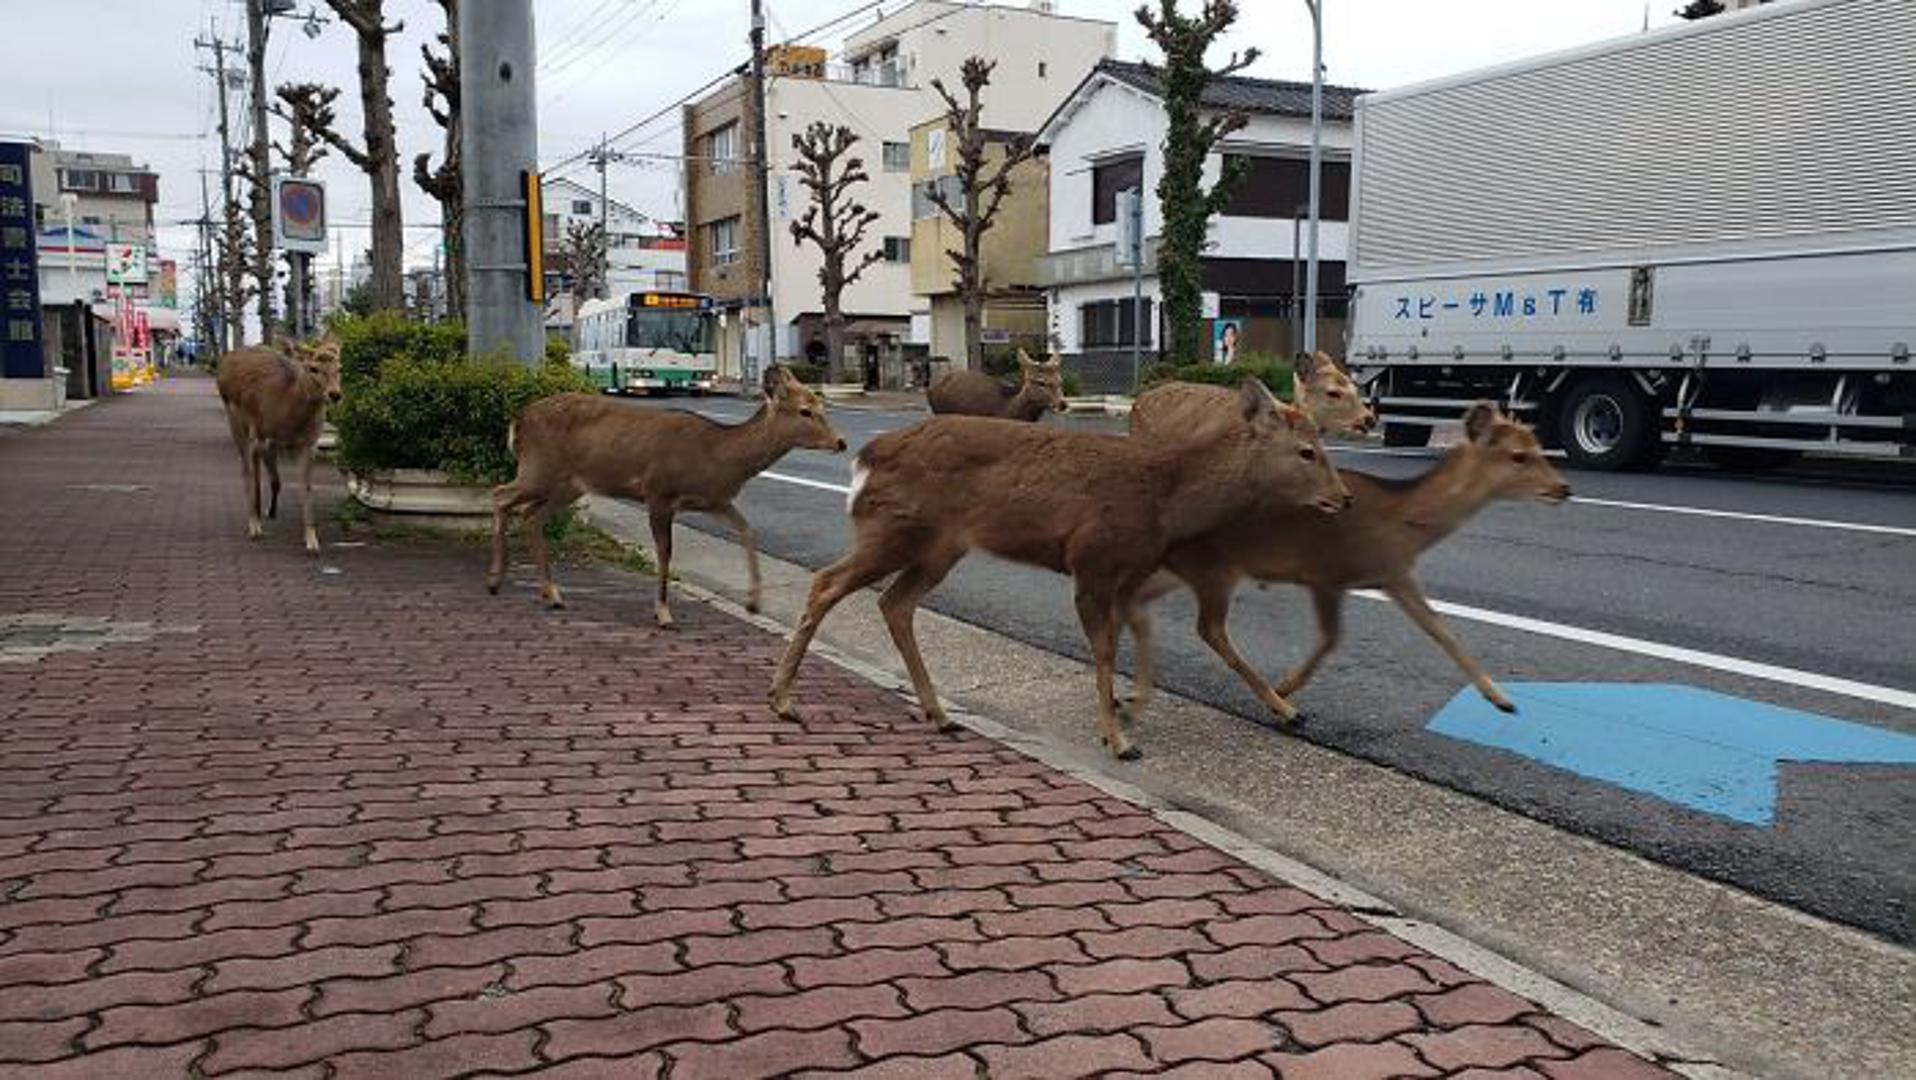 Inače se nalaze u parku Nara, gdje su postali već prava turistička atrakcija, ali sada su u potrazi za hranom izašli i na ulice.